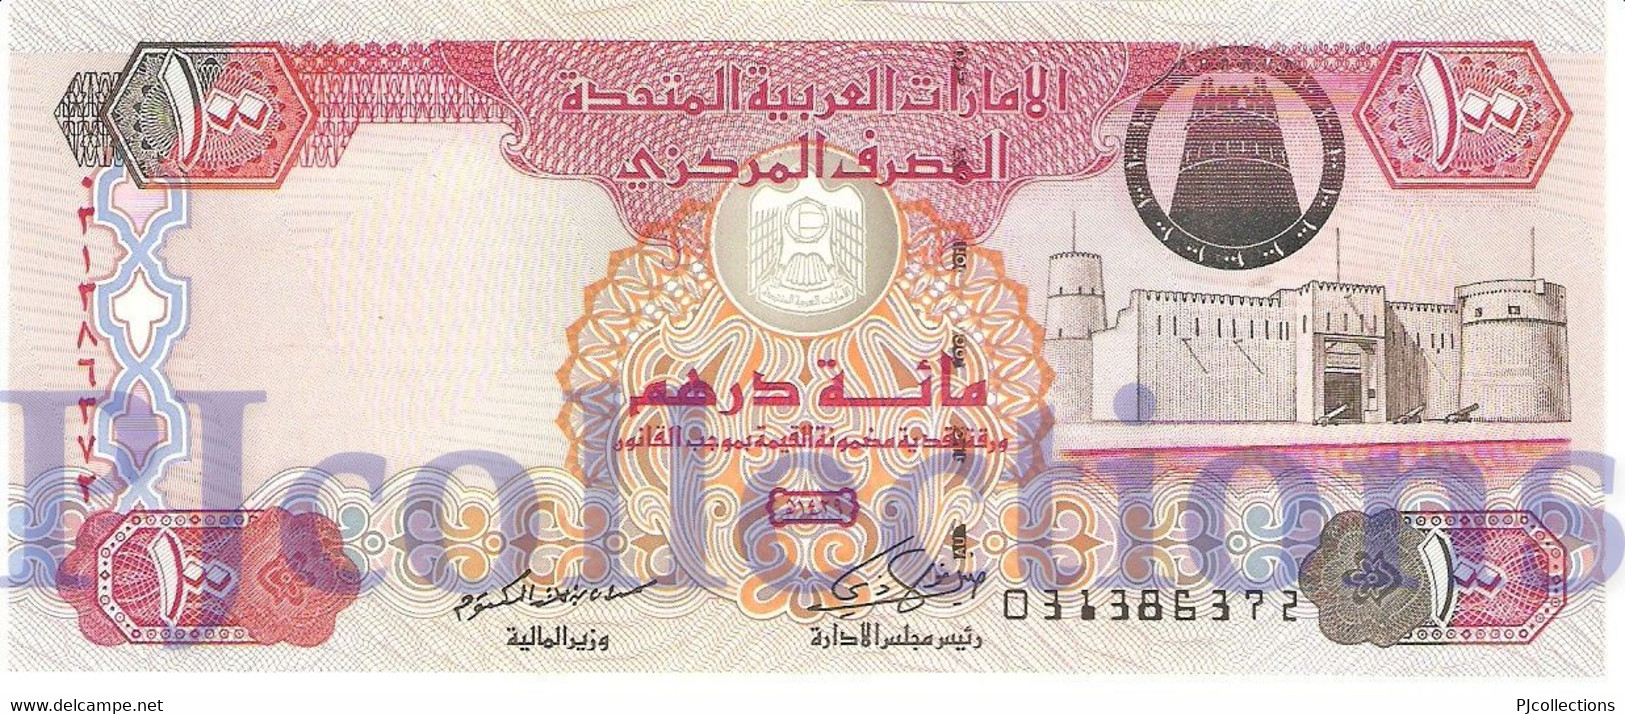 UNITED ARAB EMIRATES 100 DIRHAMS 2008 PICK 30d UNC - Ver. Arab. Emirate